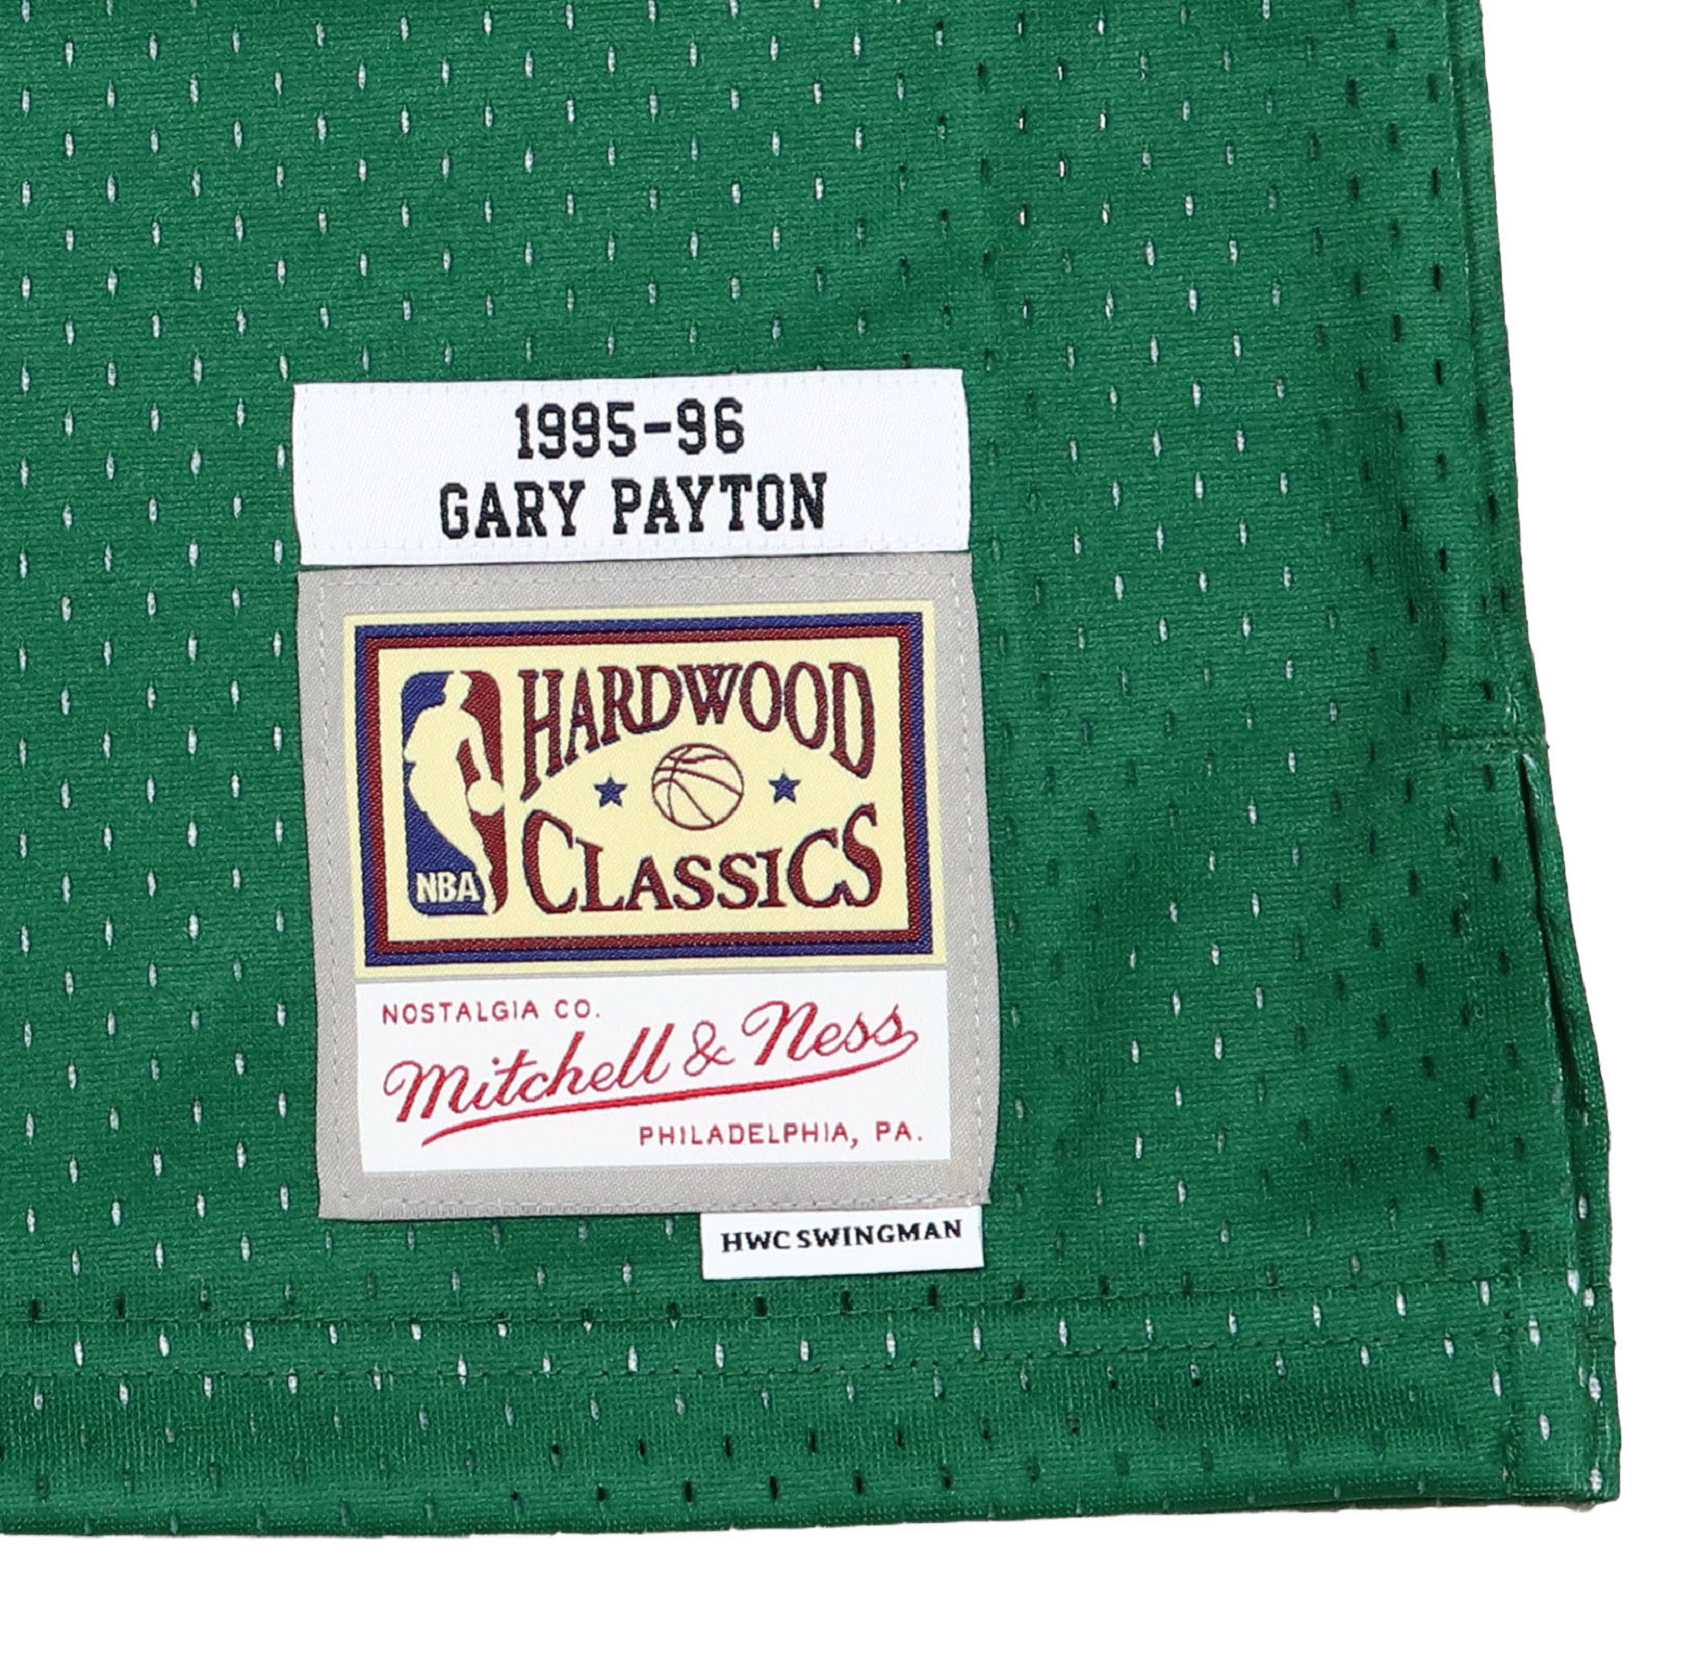 Gary Payton #20 Seattle Supersonics NBA Swingman Mitchell & Ness